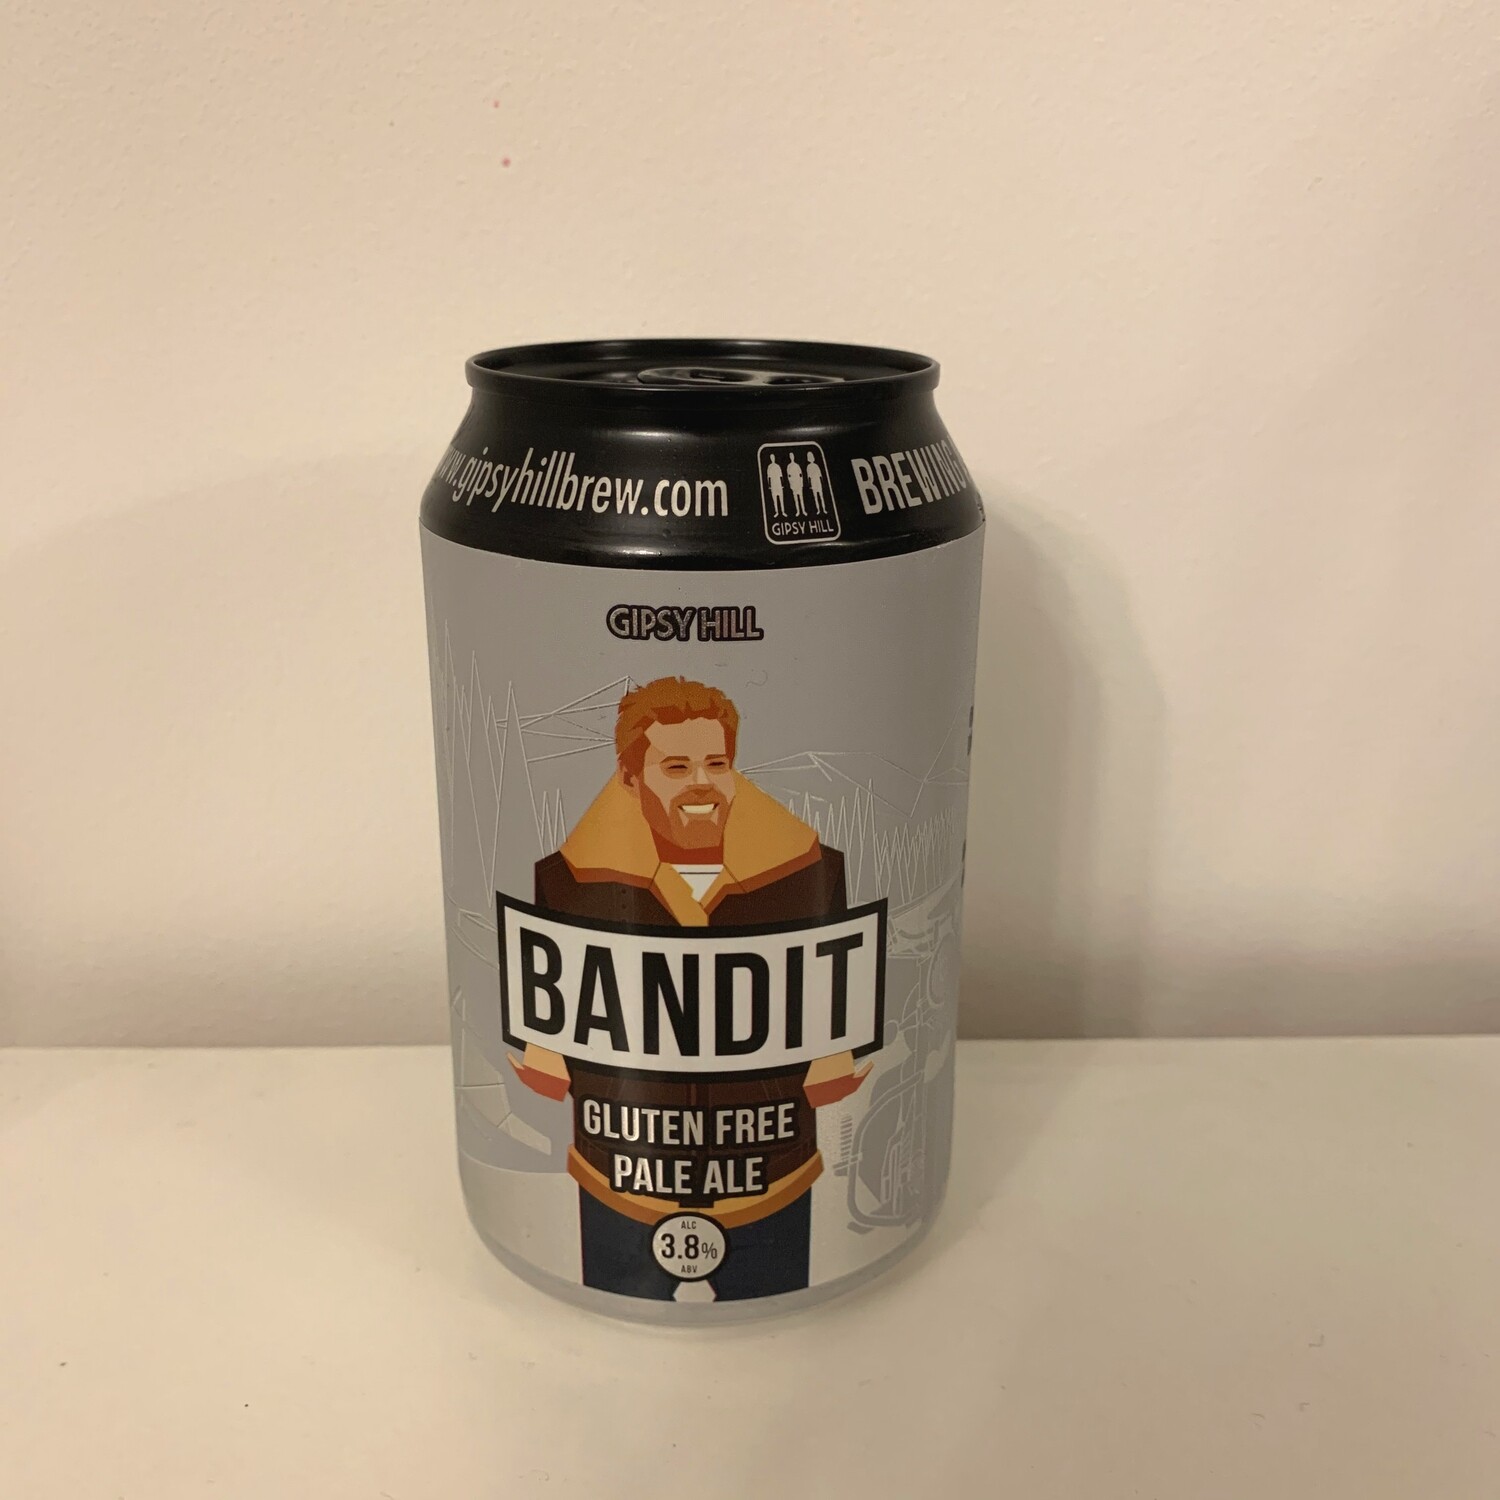 Gipsy Hill 'Bandit' Gluten Free Pale Ale 330ml - 3.8%